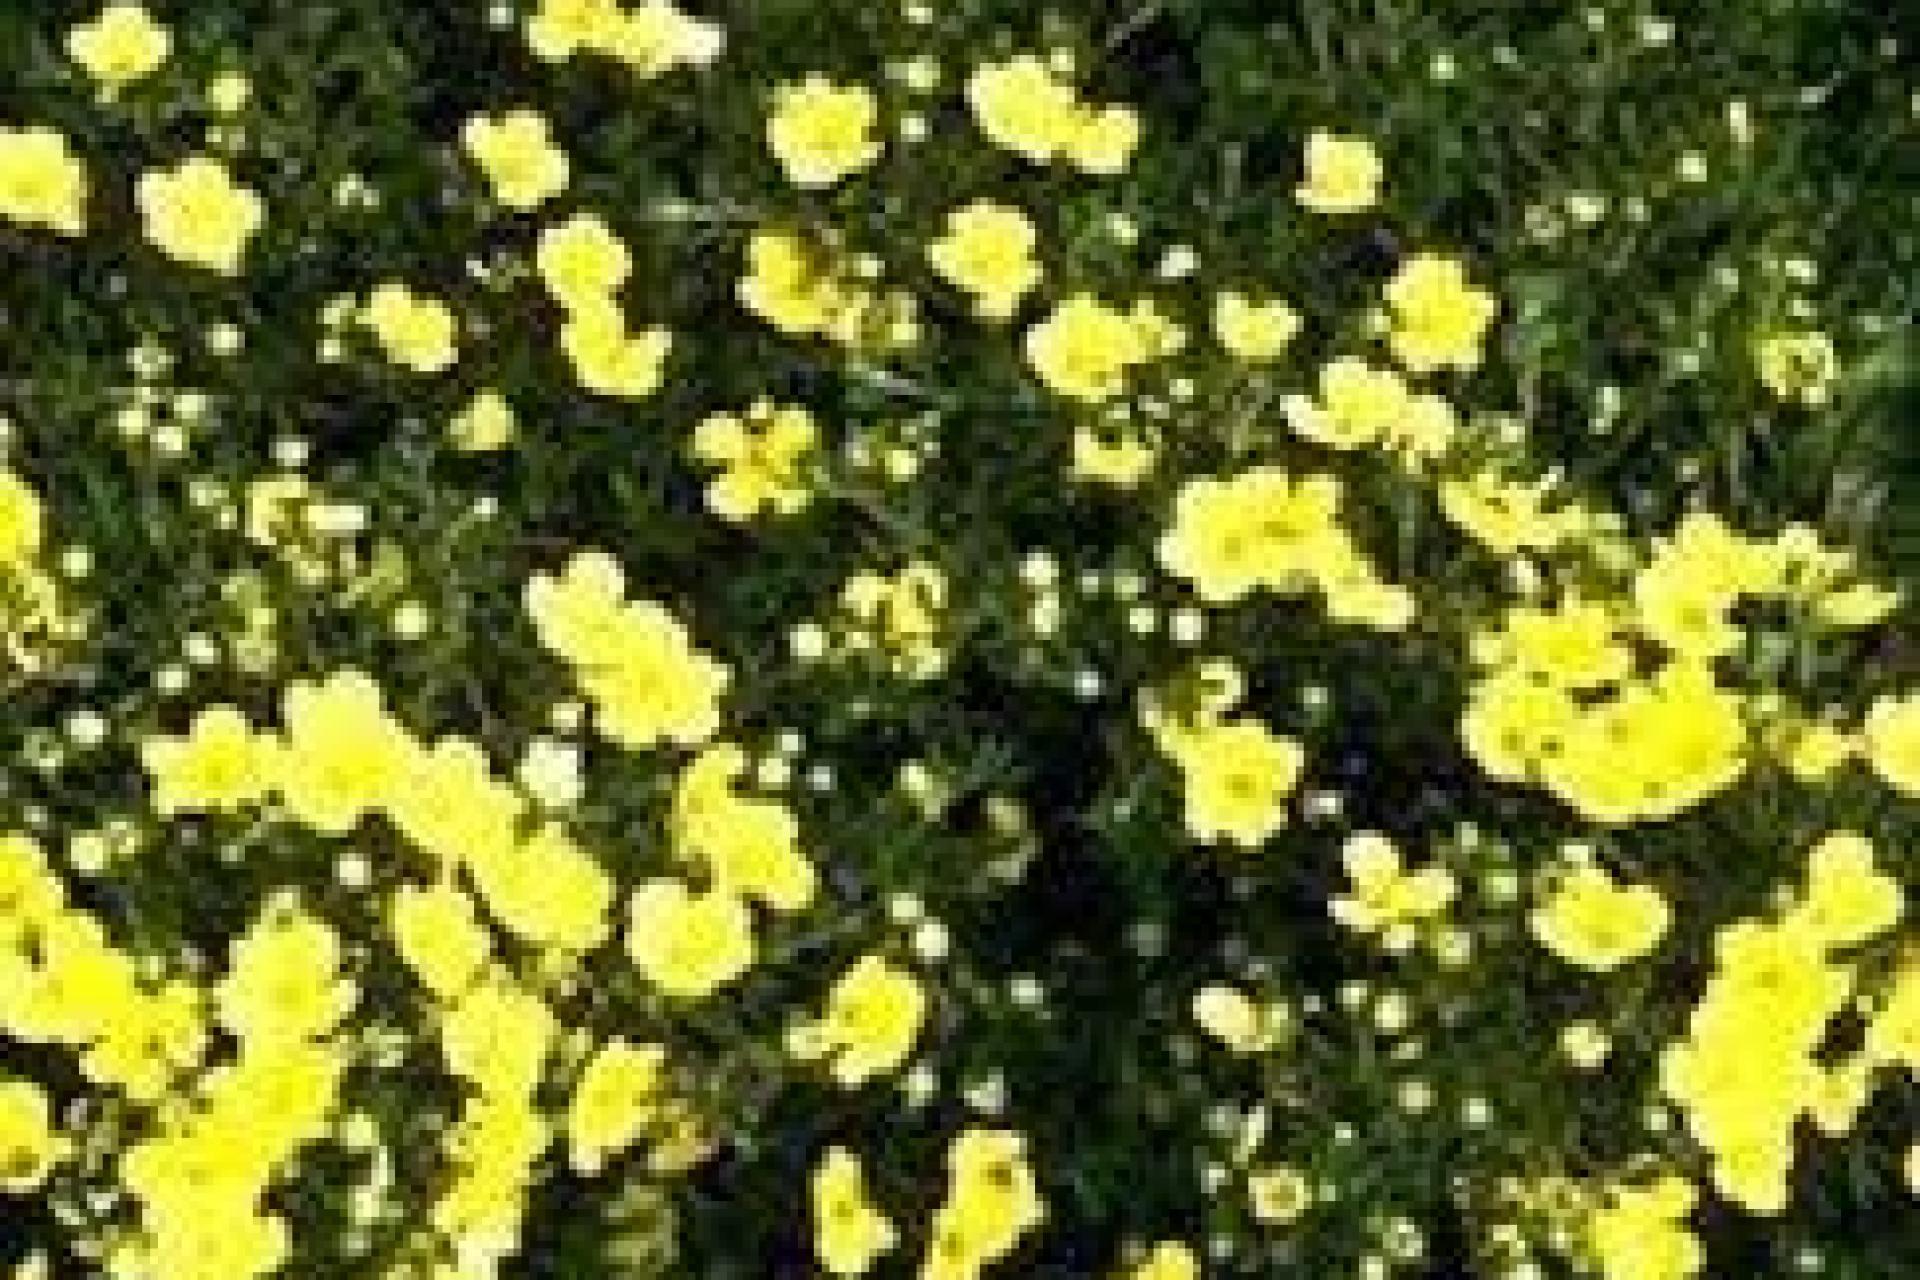 Struik met daarin kleine gele bloemen. Dit is de Ganzerik.